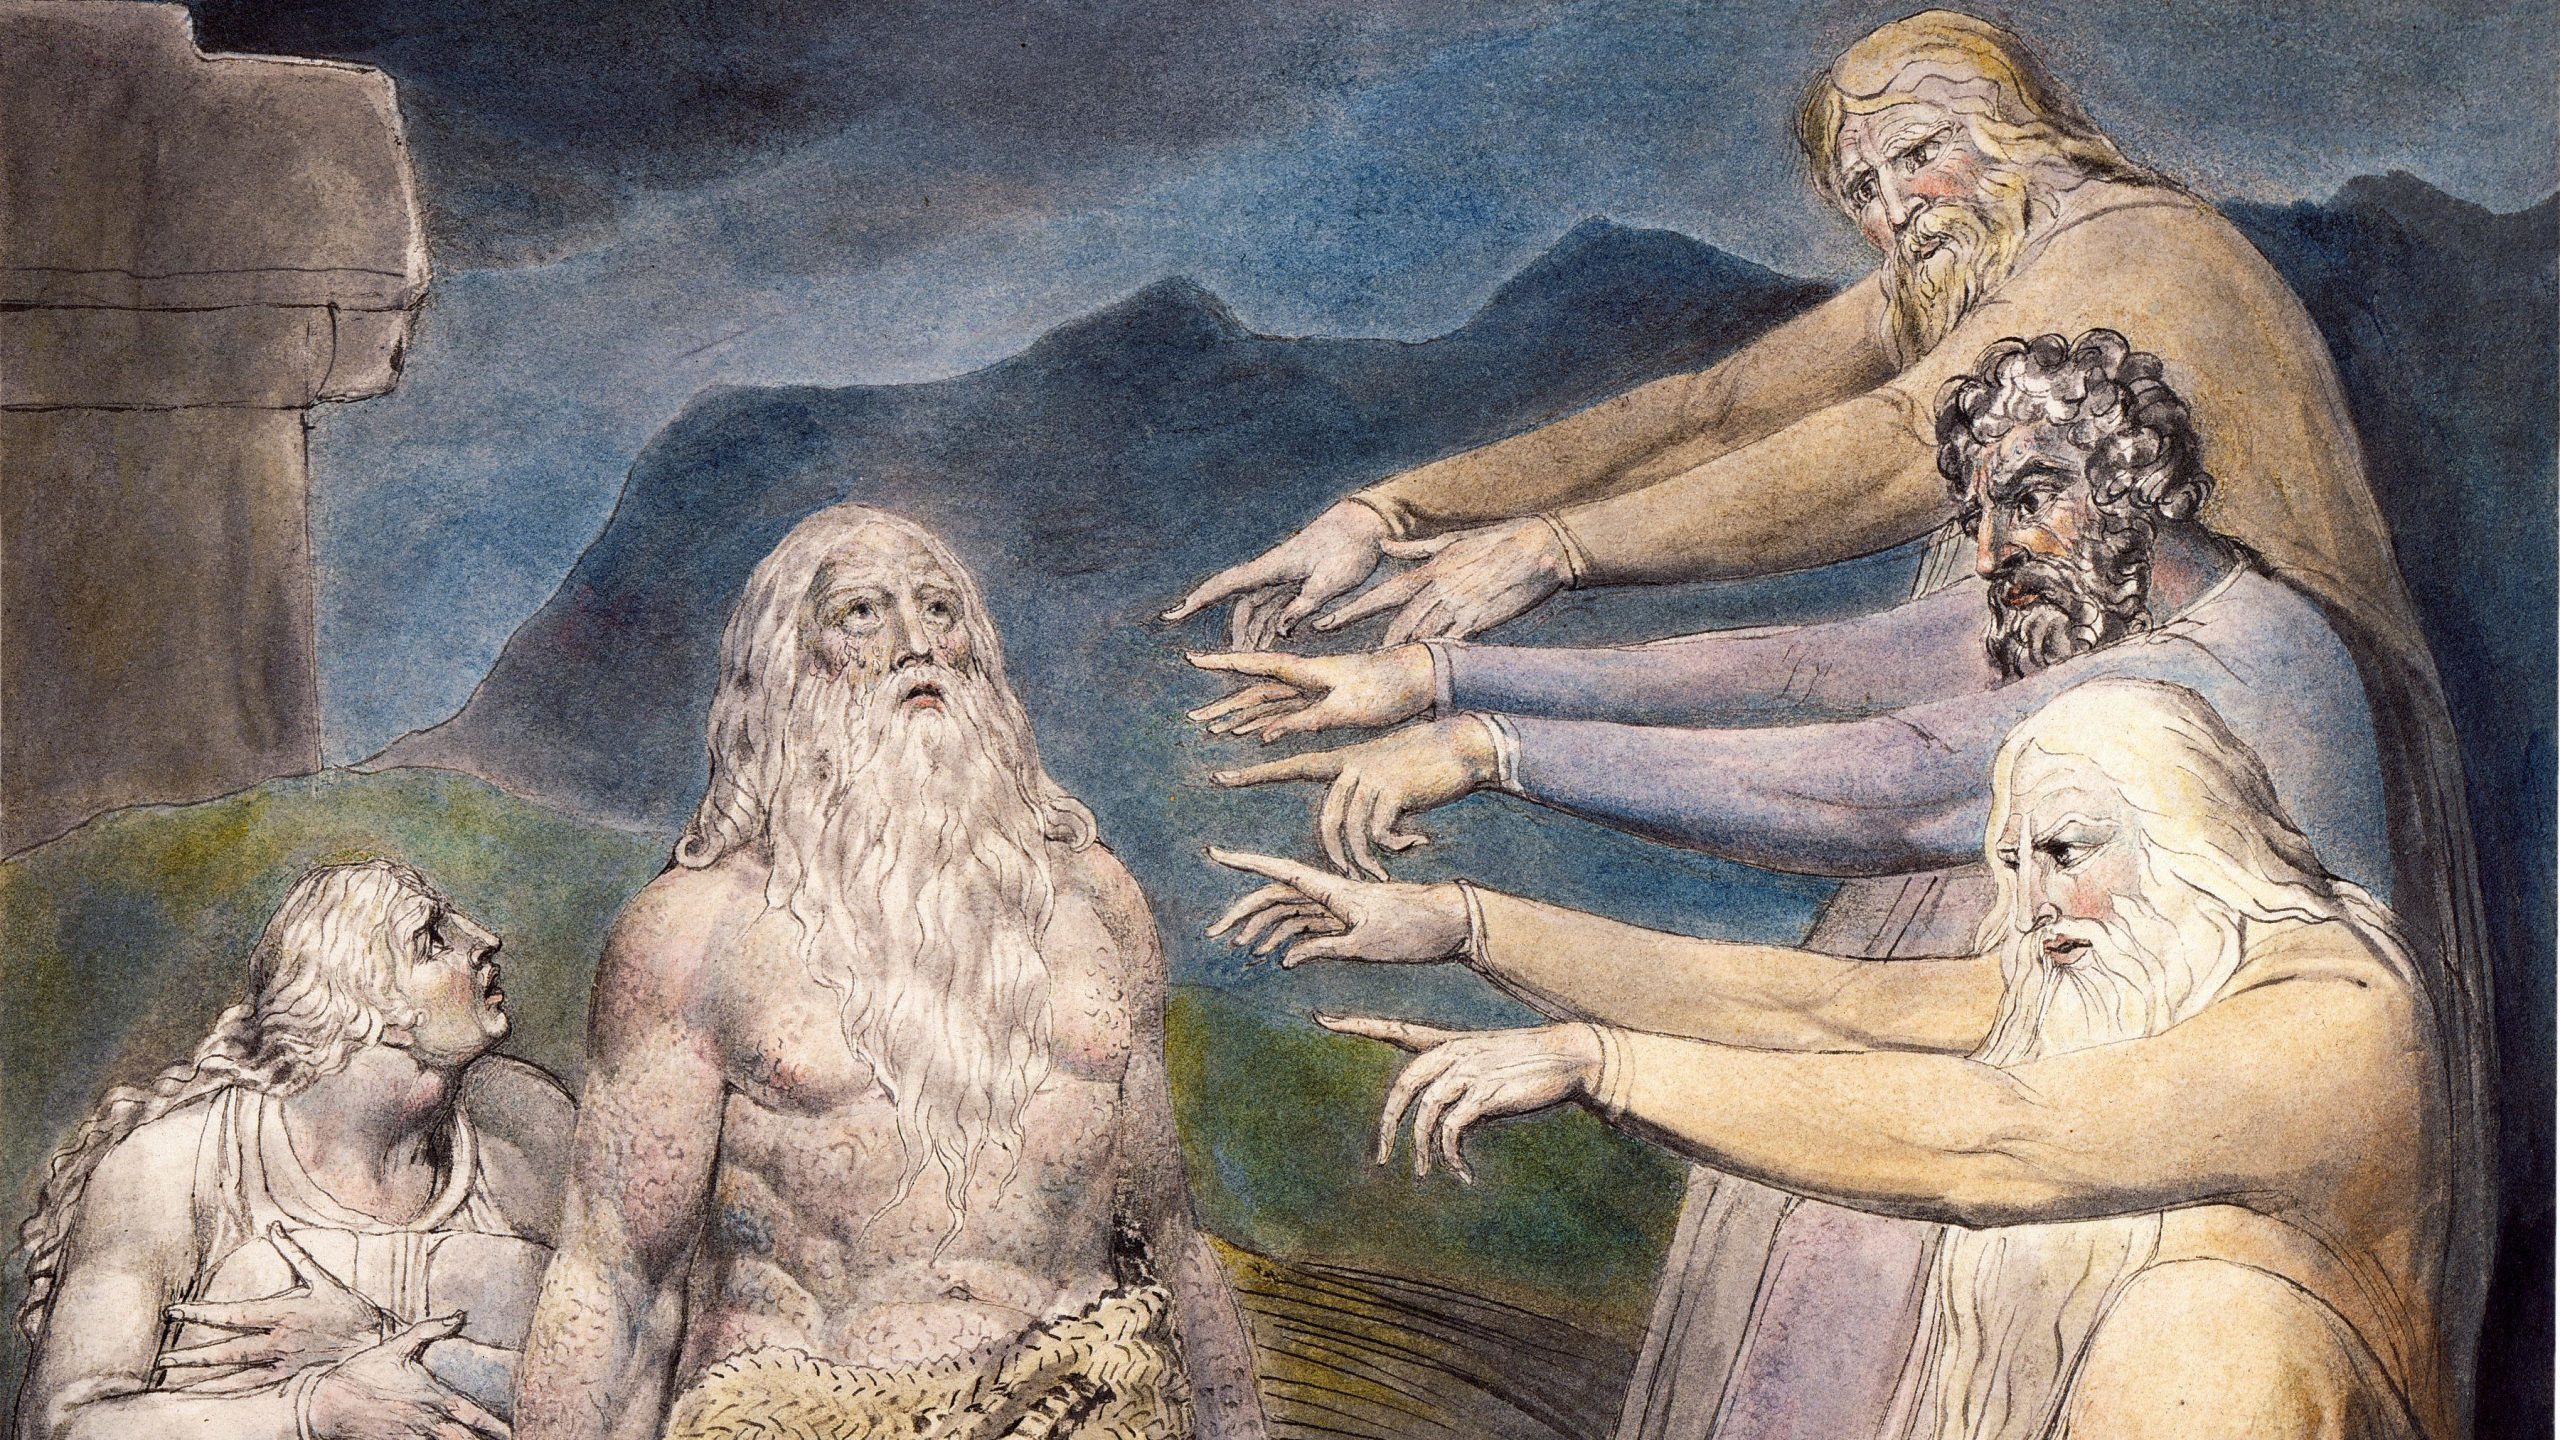 William Blake - Giobbe rimproverato dai suoi amici